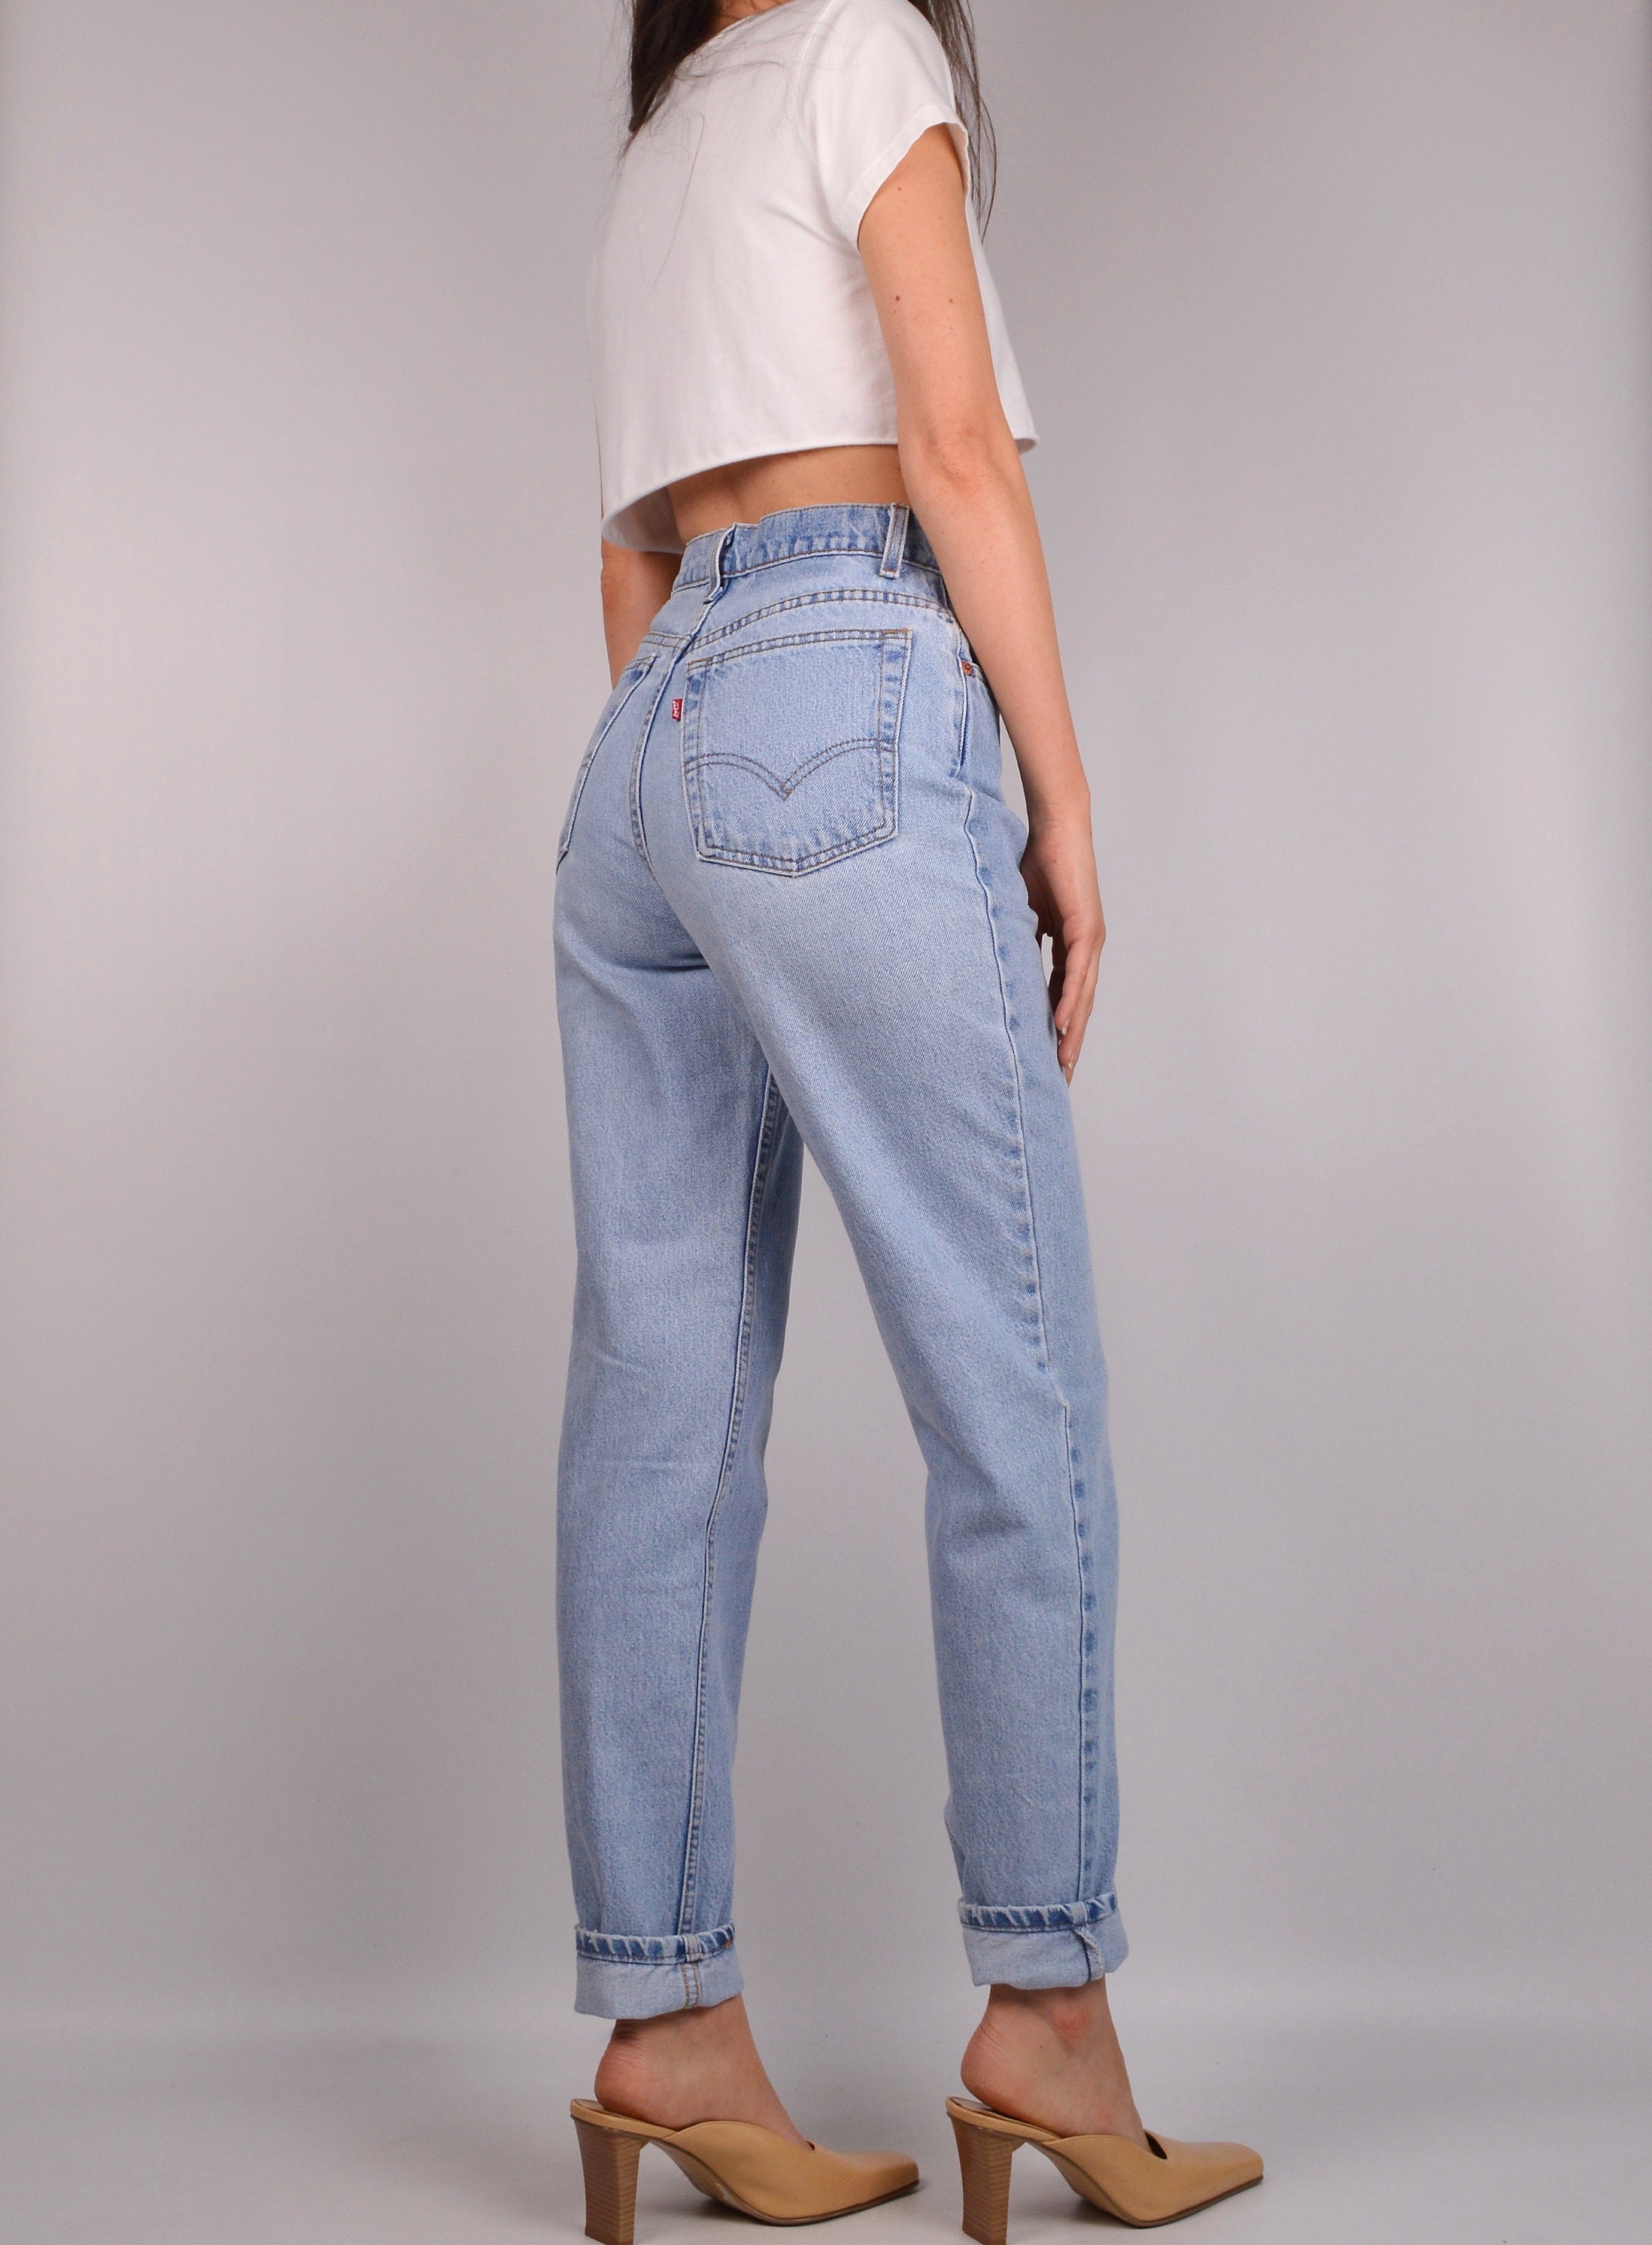 Vintage LEVI'S 512 Slim Fit Jeans (27W)